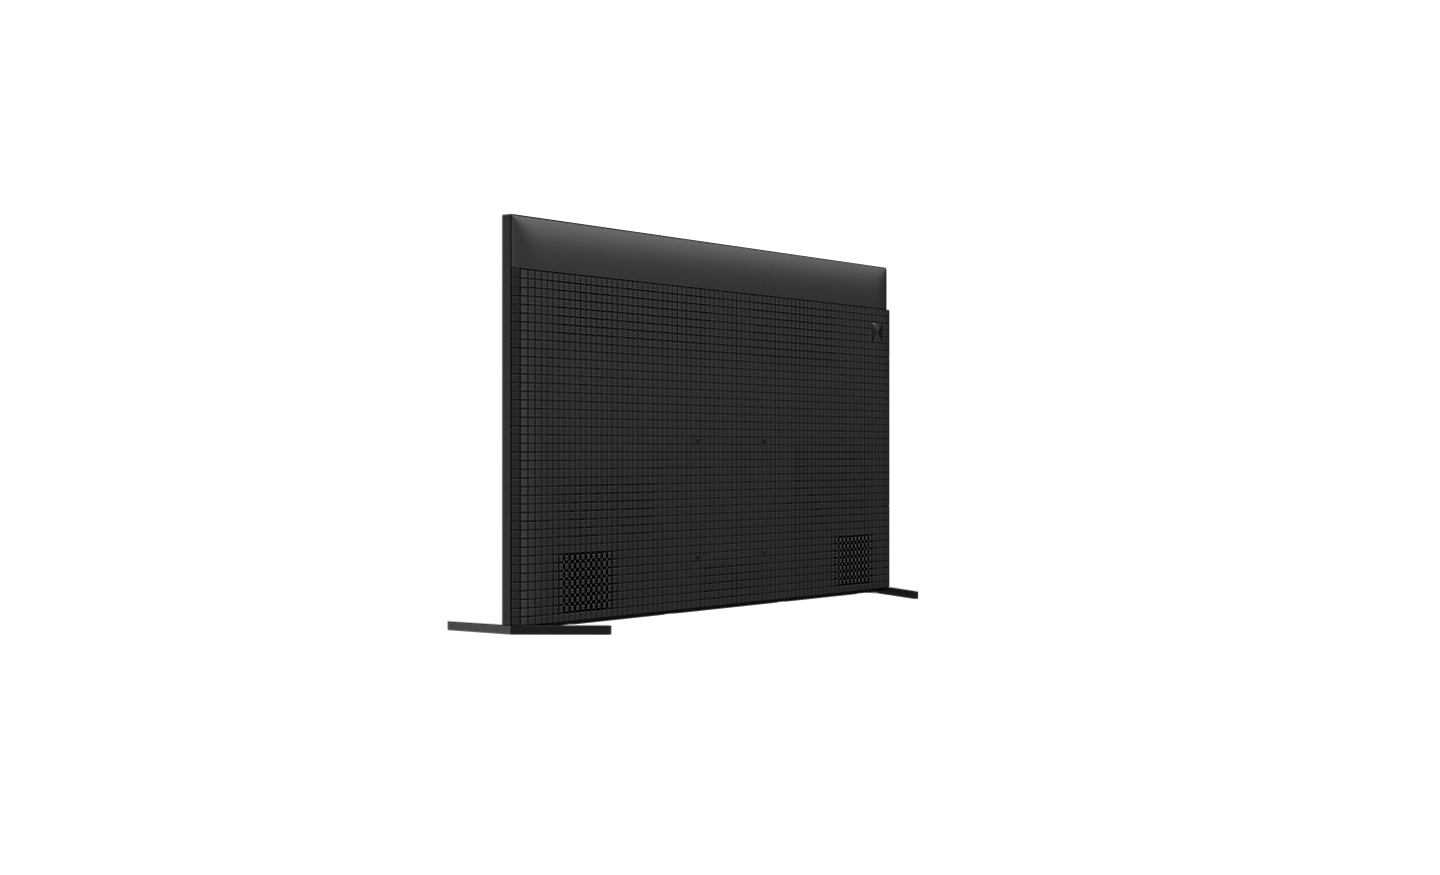 Drehbarer 360°-Viewer für X95L Serie mit 360-Grad-Ansicht des Fernsehers